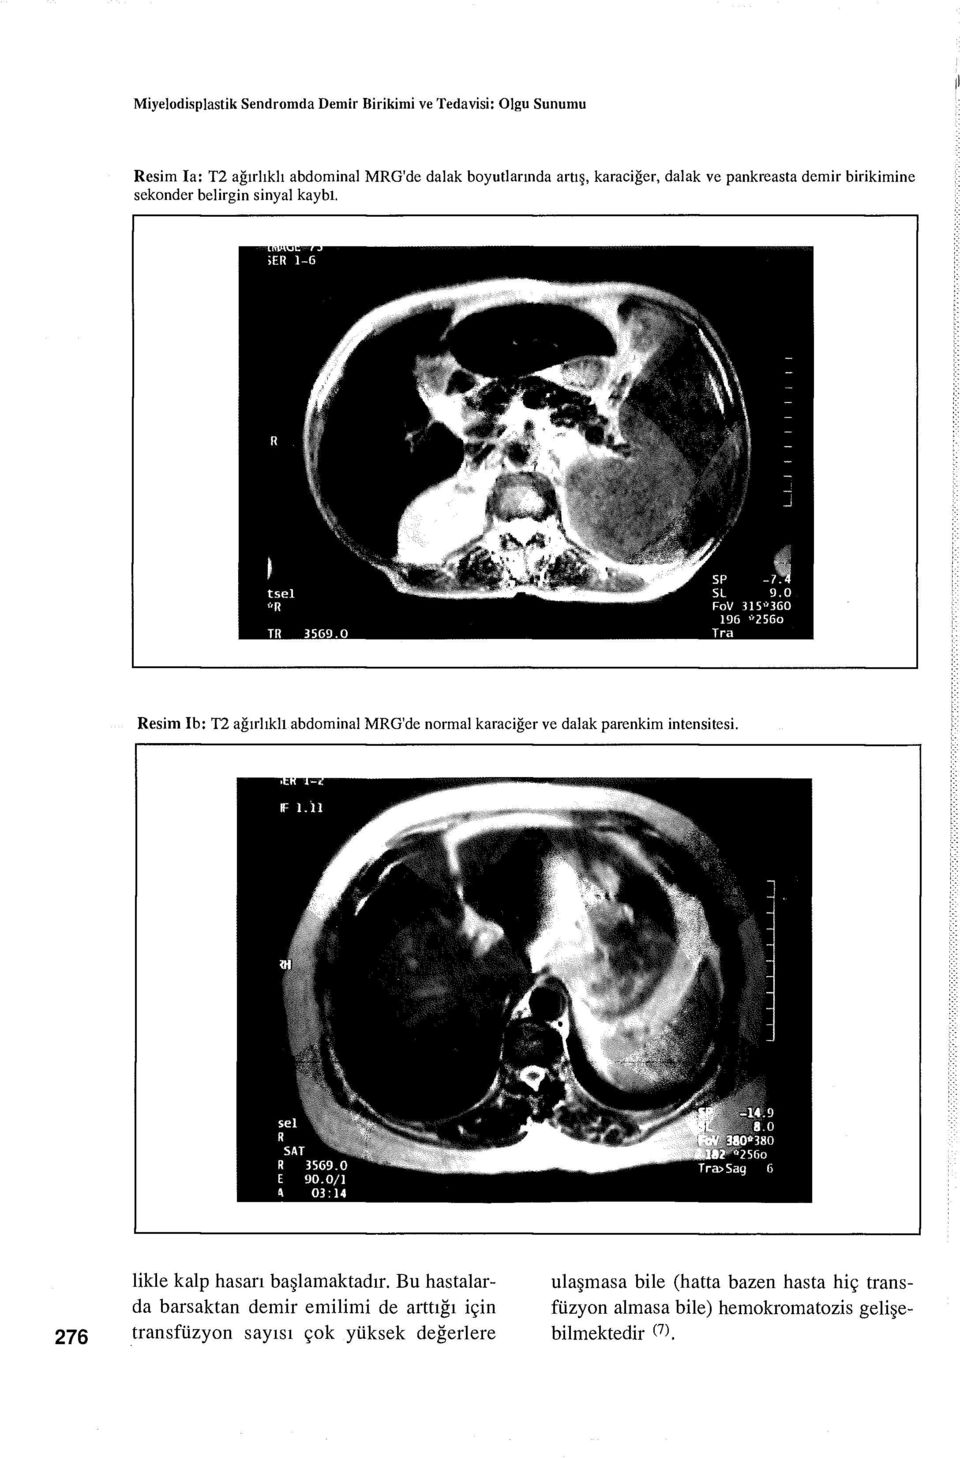 Resim Ib: T2 ağırlıklı abdominal MRG'de normal karaciğer ve dalak parenkim intensitesi. 276 likle kalp hasarı başlamaktadır.